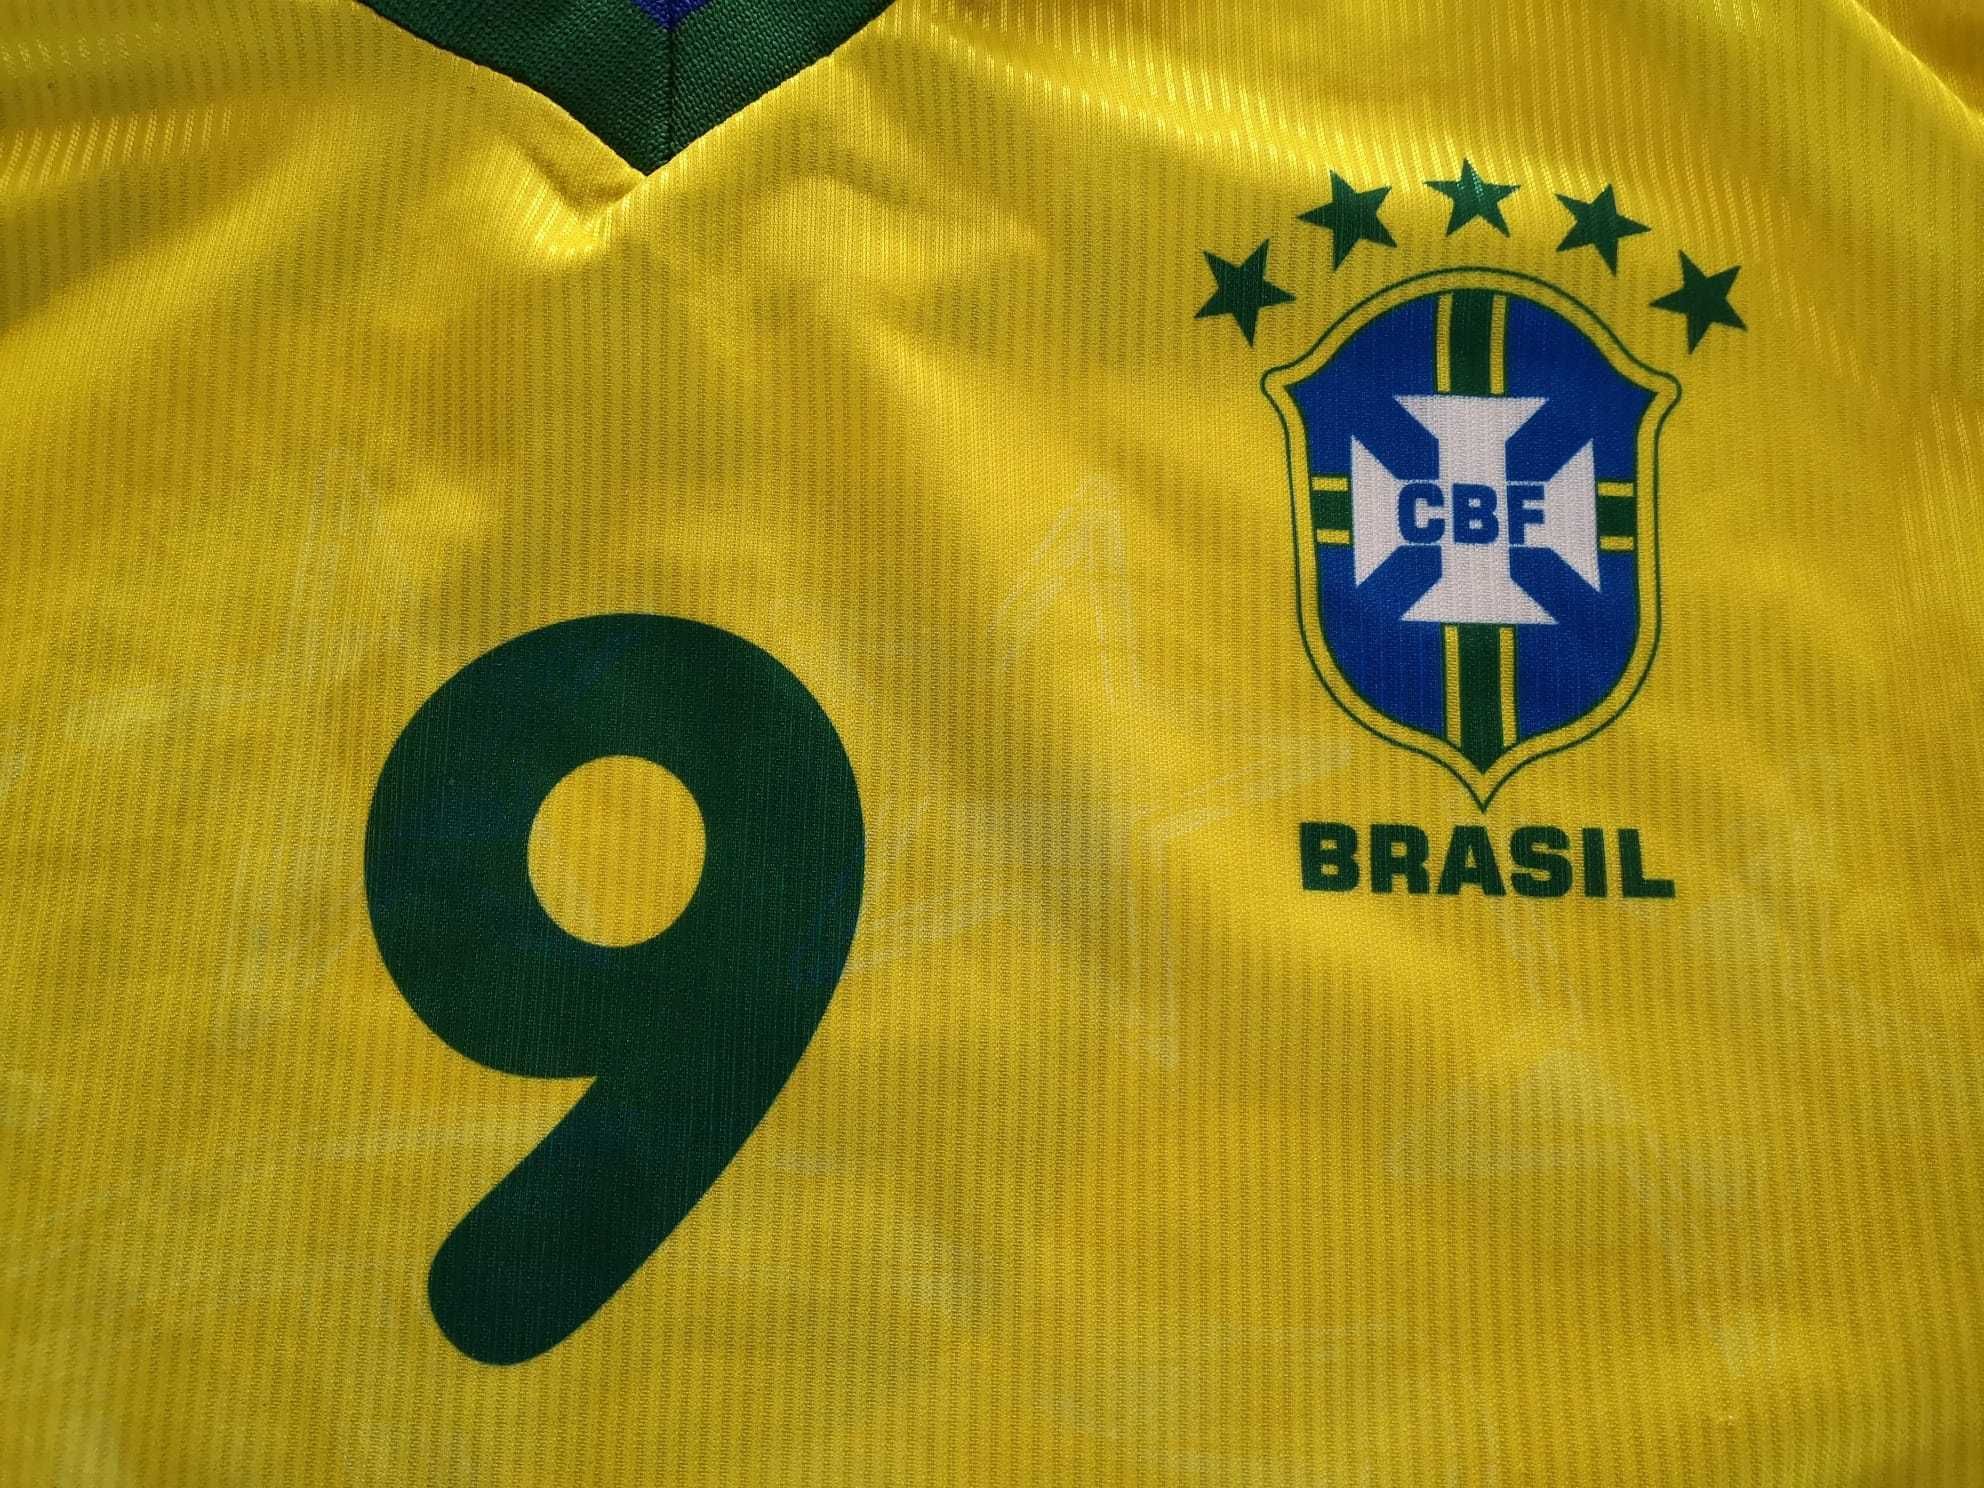 Camisola não oficial do Brasil de Ronaldo "Fenómeno"